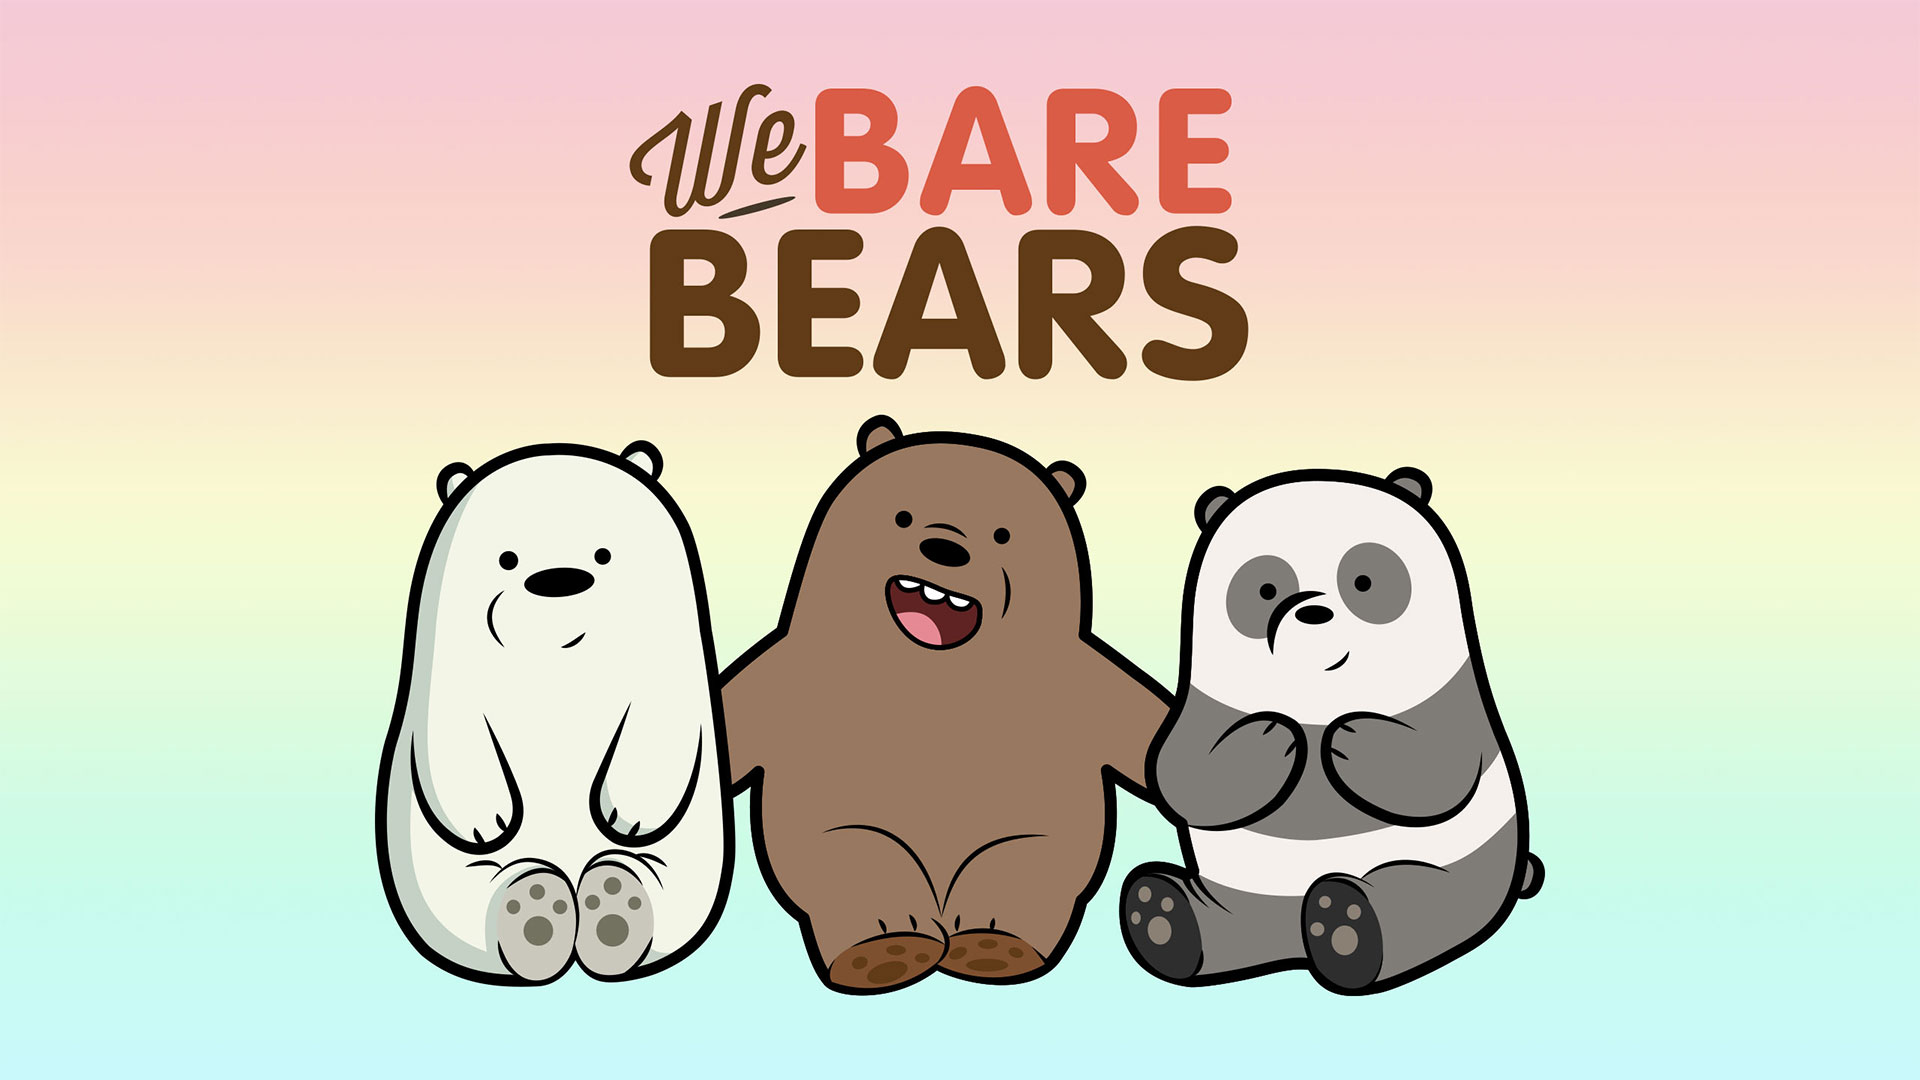 Ife Bare Bears hình nền chất lượng cao